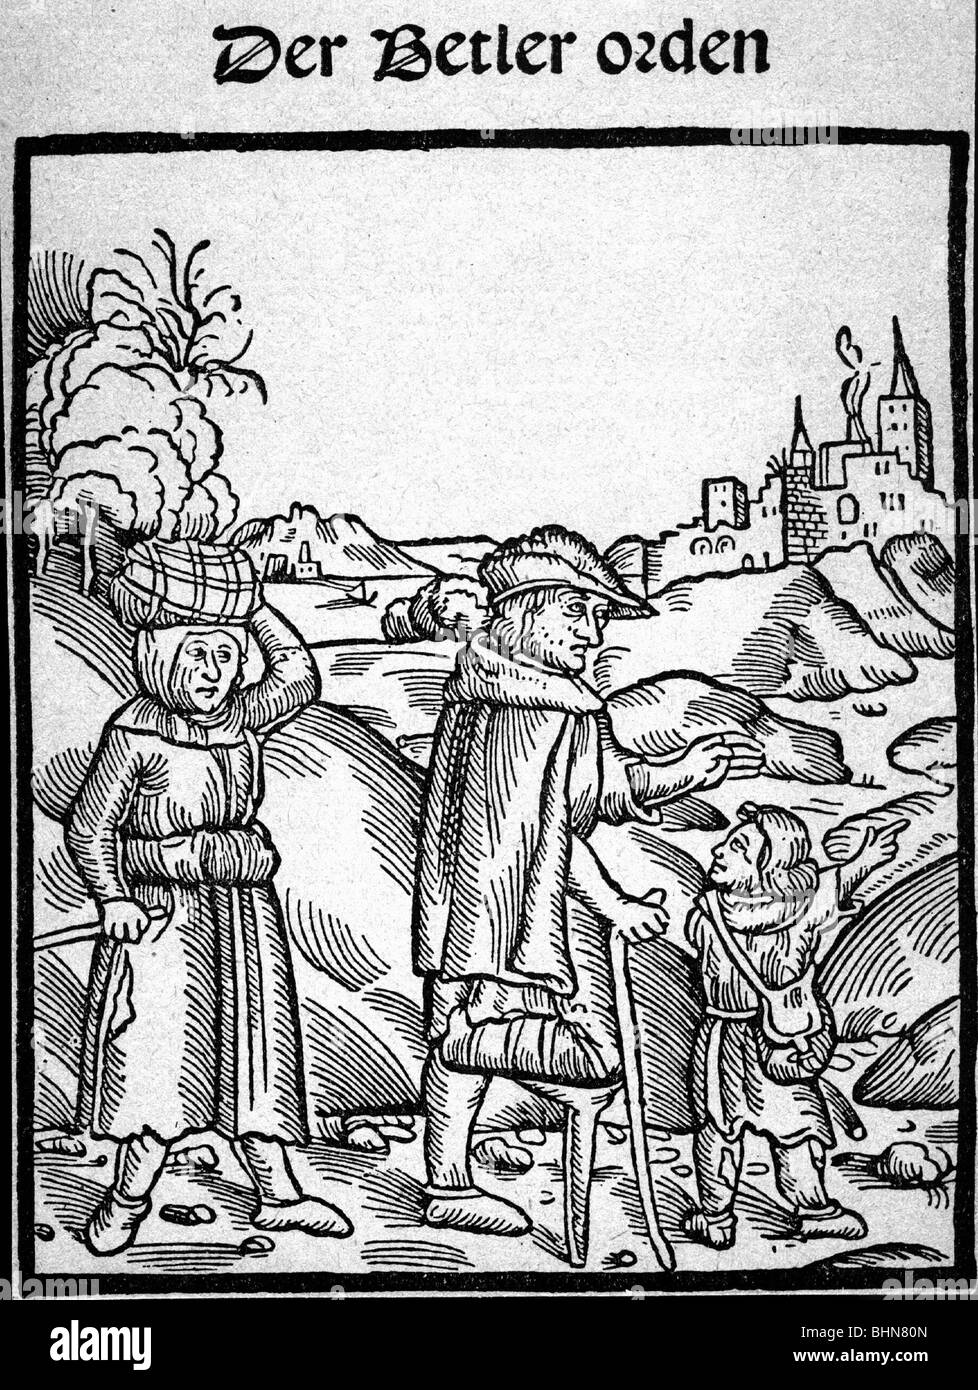 Les gens, la pauvreté, la misère, l'époque médiévale, le Moyen âge, le mendiant, titre d'un livre qui est un avertissement sur les mendiants, la coupe de bois, vers 1500, Banque D'Images